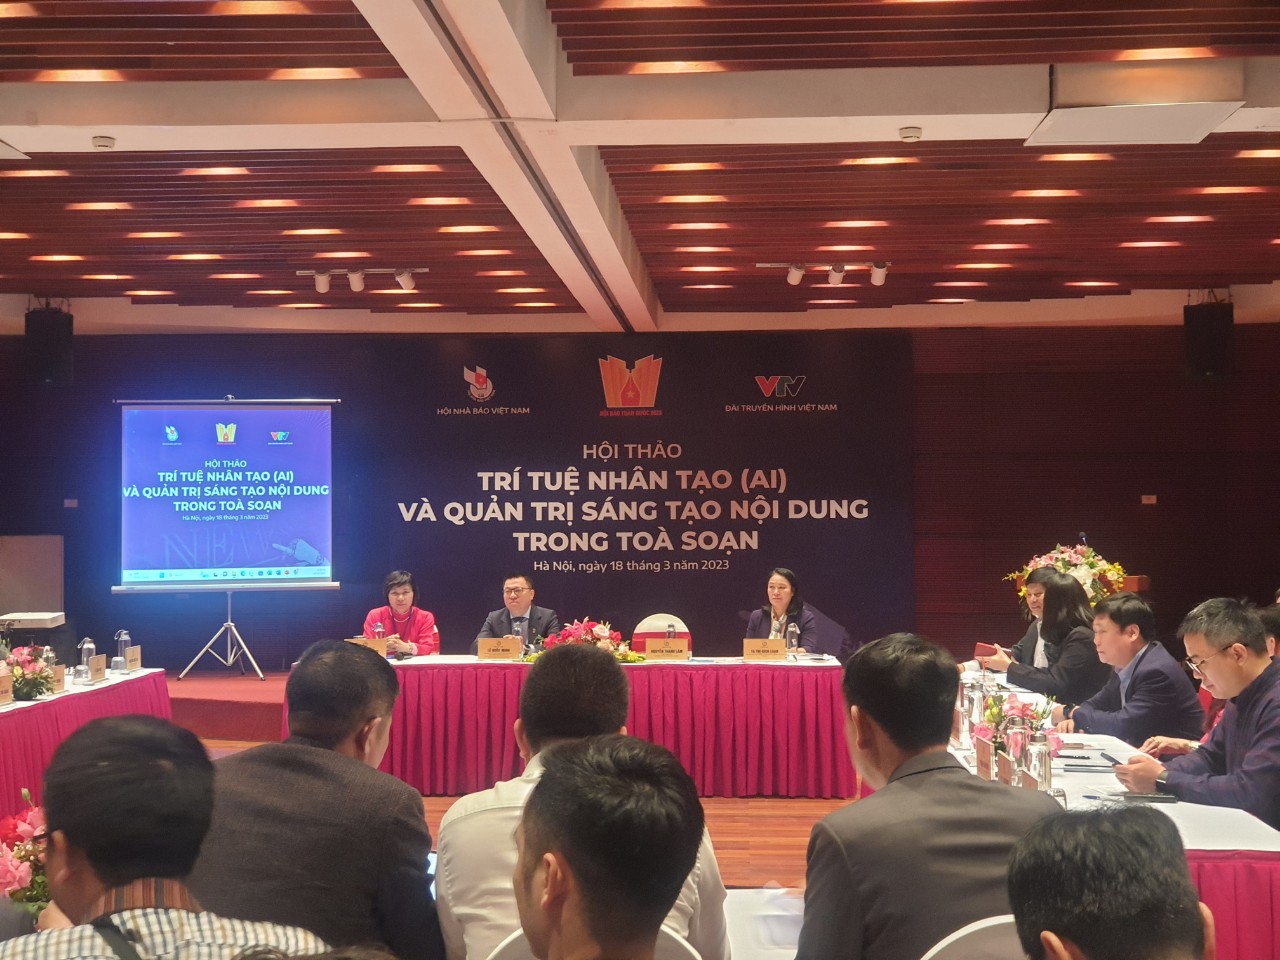 Hội thảo Trí tuệ nhân tạo (AI) và quản trị sáng tạo nội dung trong tòa soạn, được Hội Nhà báo Việt Nam phối hợp với Đài Truyền hình Việt Nam tổ chức ngày 18-3-2023 tại Bảo tàng Hà Nội, trong khuôn khổ Hội Báo năm 2023.